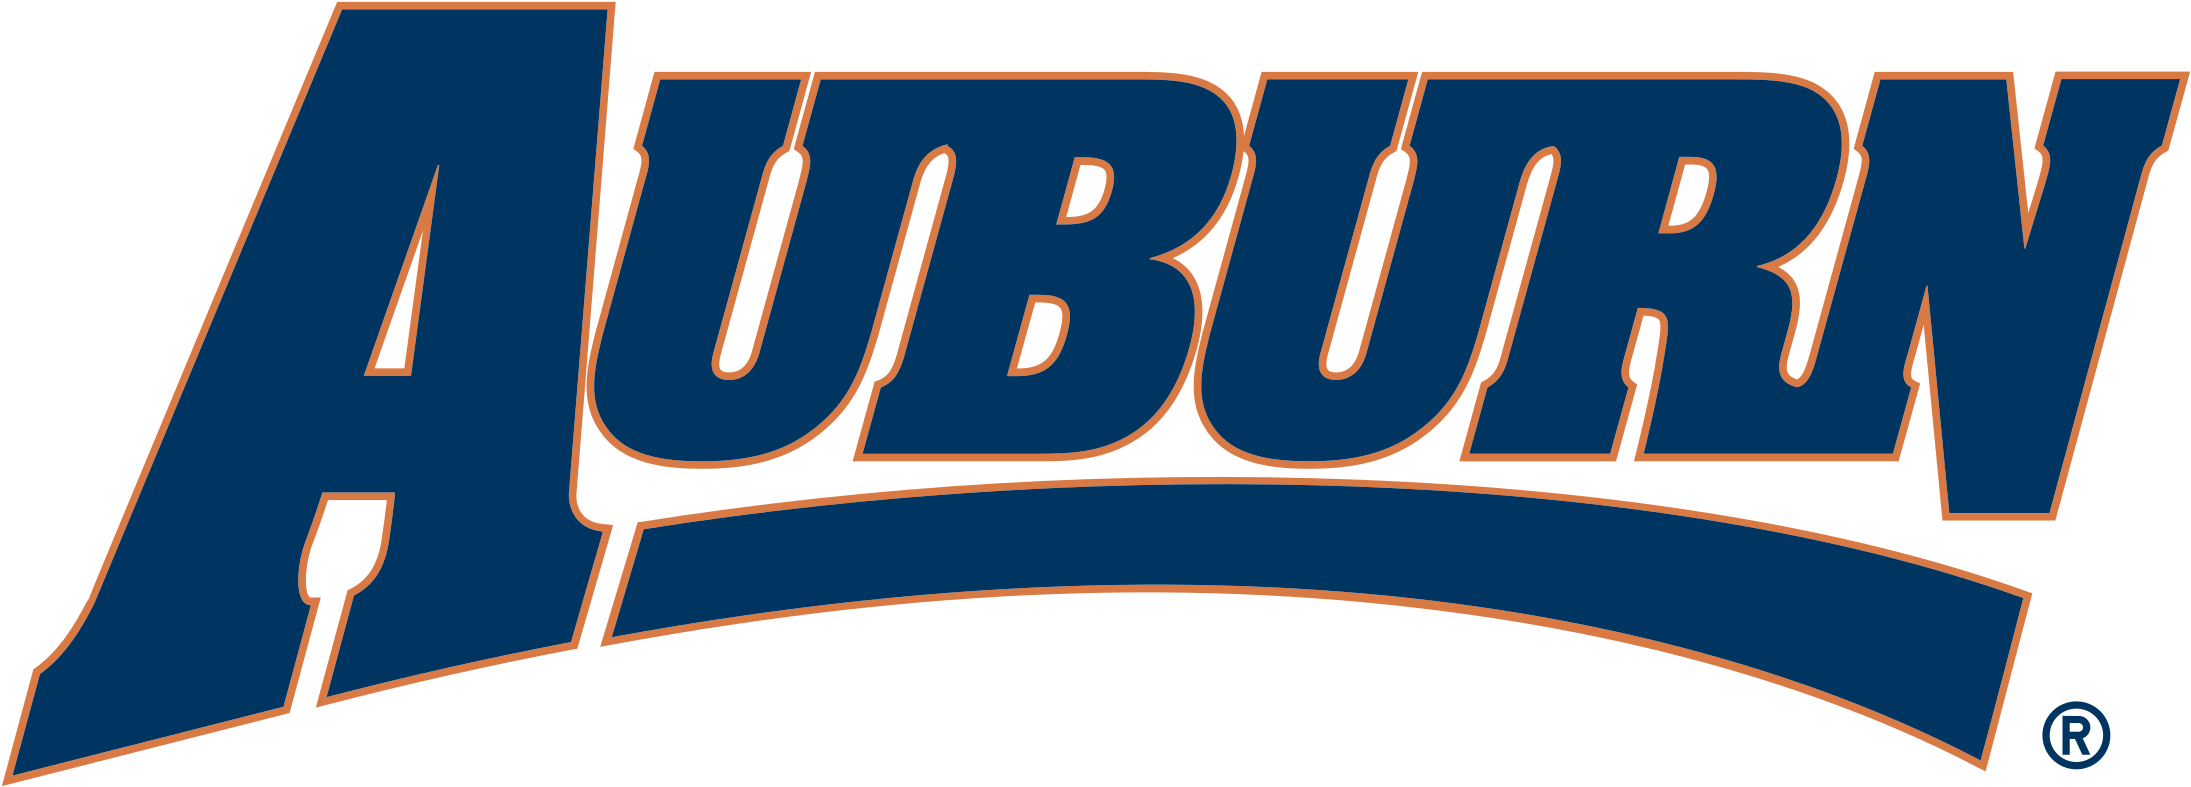 Auburn Tigers Logo Png Transparent - Auburn Vector Logo (2400x2400), Png Download